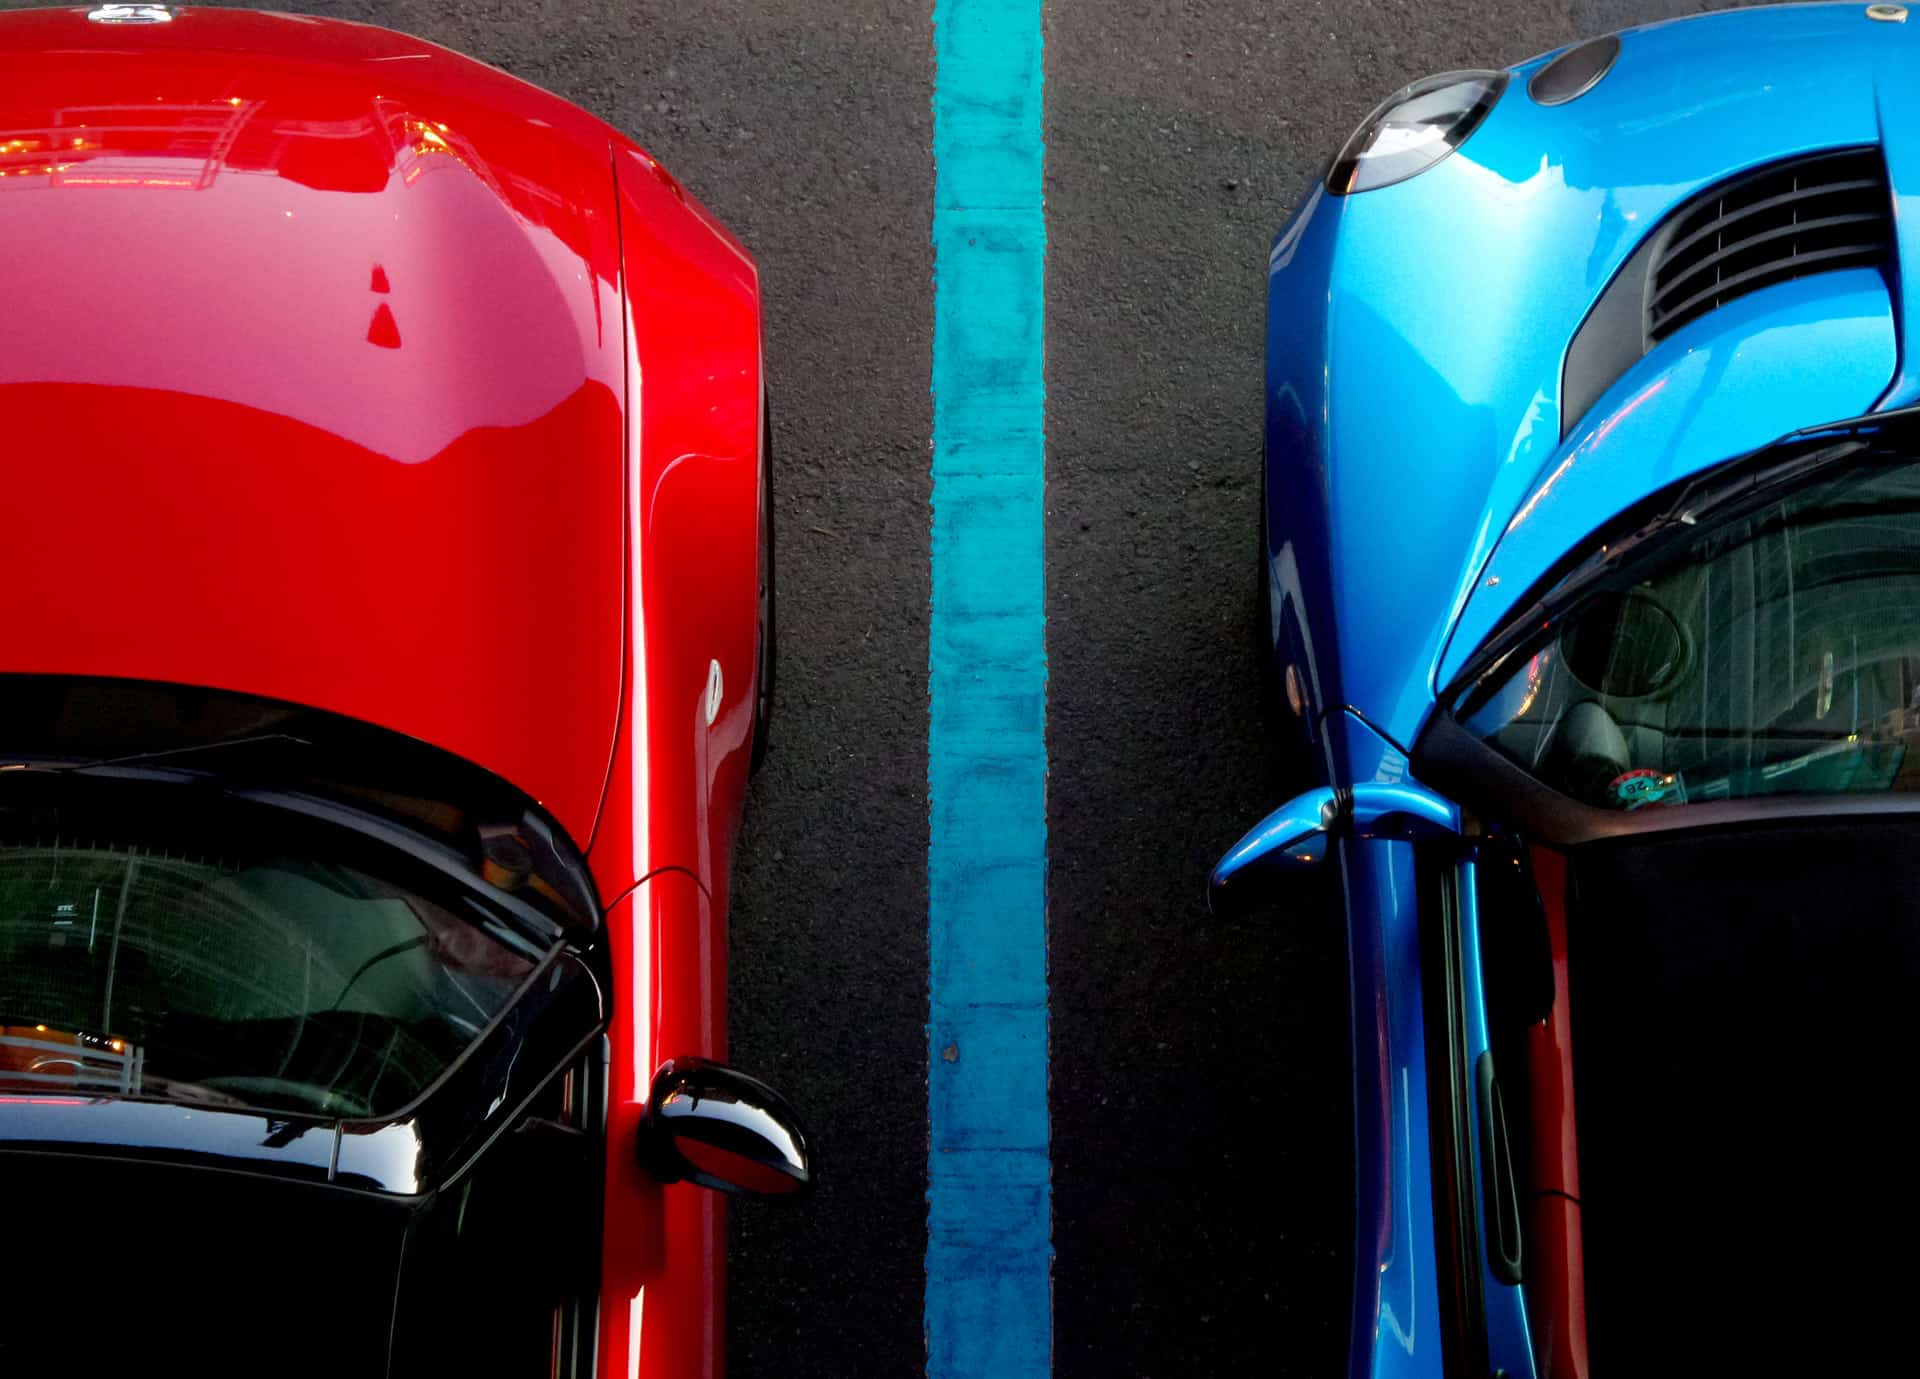 شرح مبسط لـ مواقف السيارات في سويسرا و دلالات الألوان مع تطبيقات ذكية تساعدك في ايجاد الموقف